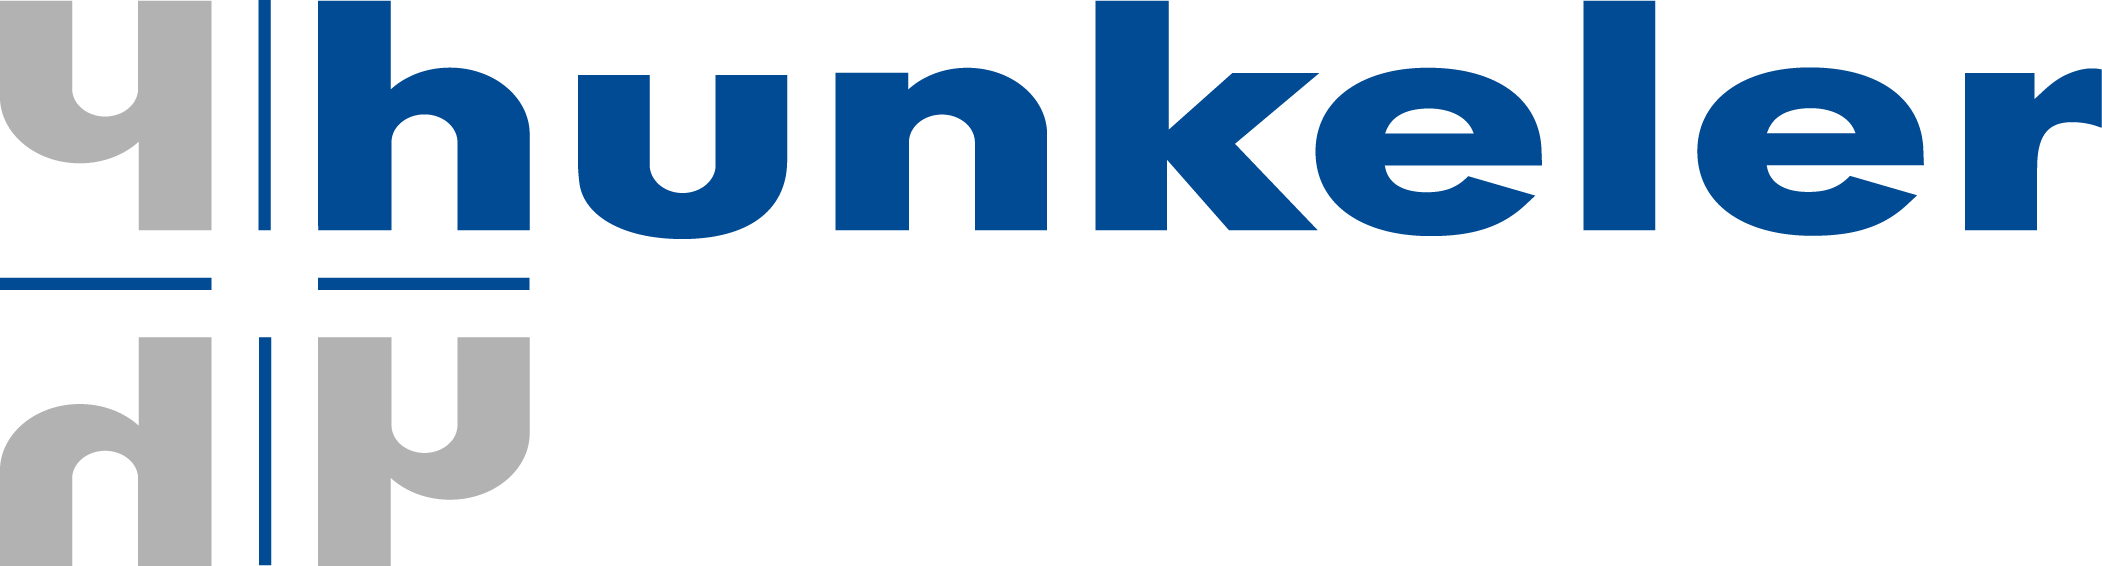 Hunkeler_Logo